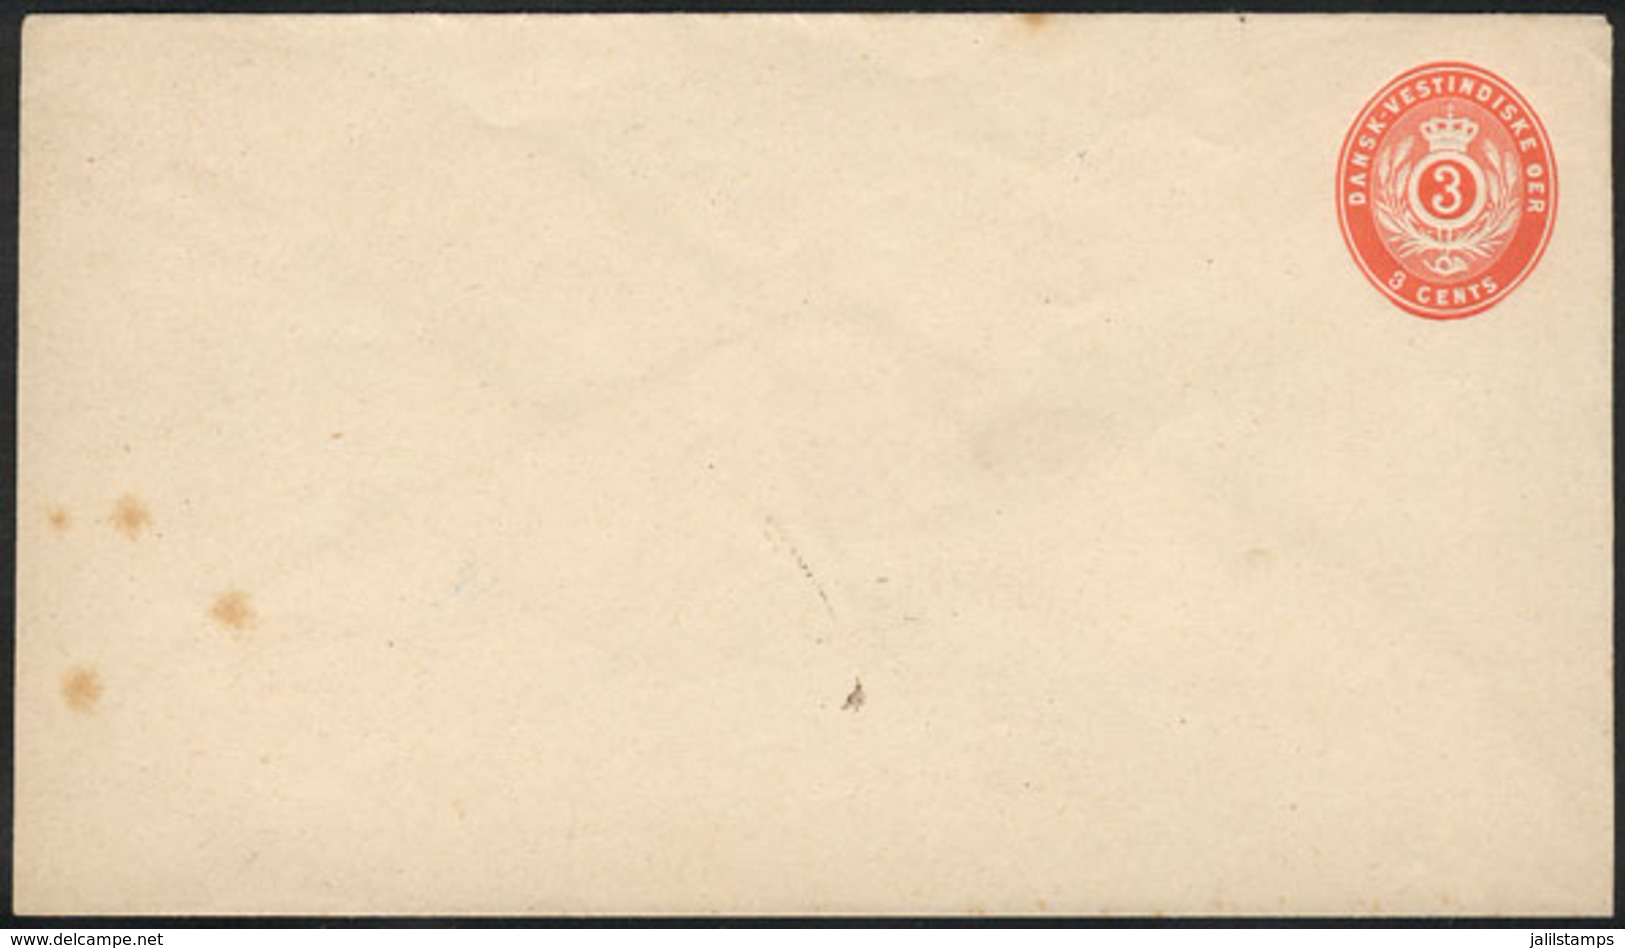 DANISH ANTILLES: Unused 3c. Stationery Envelope, Fine Quality, Low Start. - Dänische Antillen (Westindien)